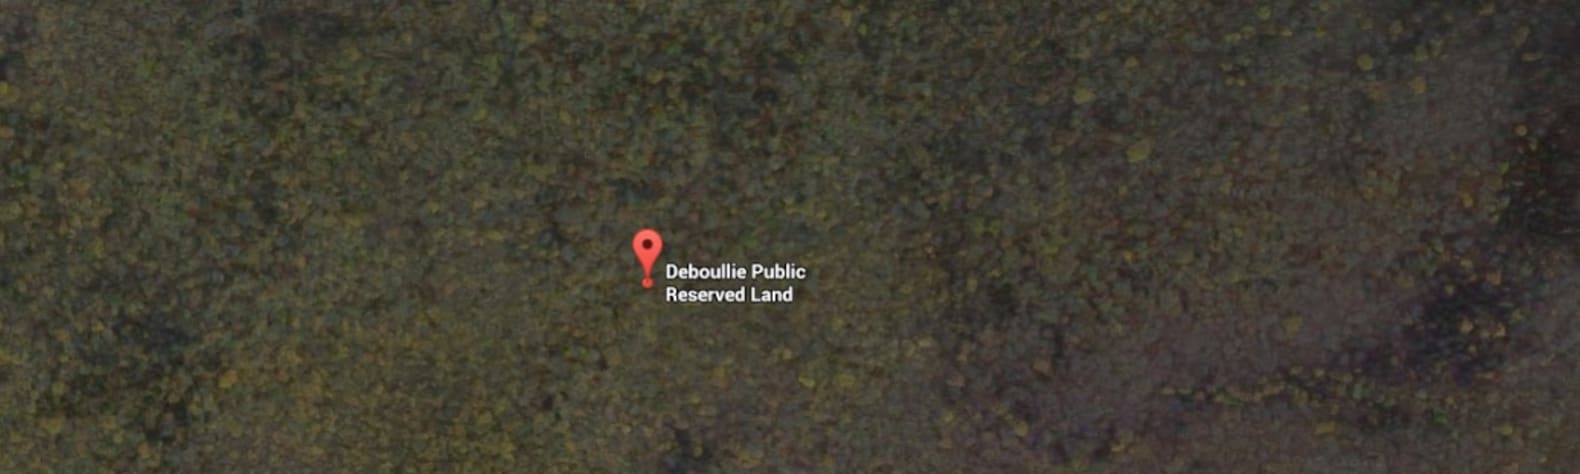 Deboullie Public Reserved Land